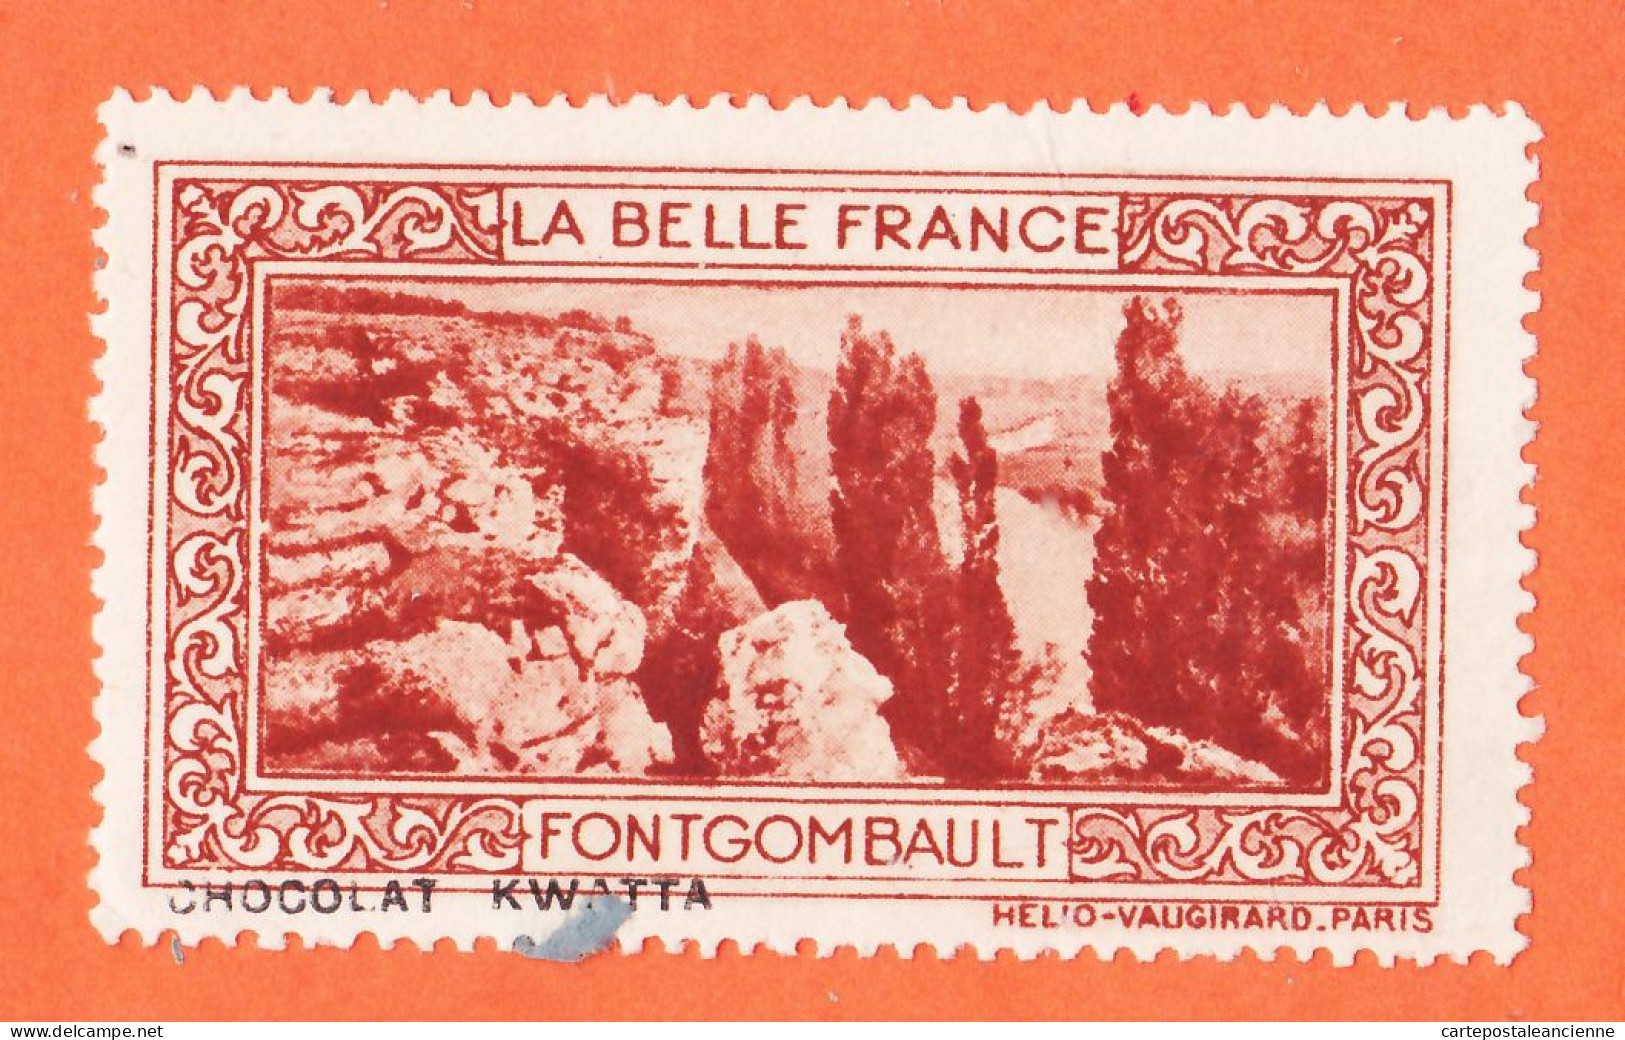 12938 / ⭐ ◉ FONTGOMBAULT 36-Indre Pub Chocolat KWATTA Vignette Collection BELLE FRANCE HELIO-VAUGIRARD Erinnophilie - Tourisme (Vignettes)